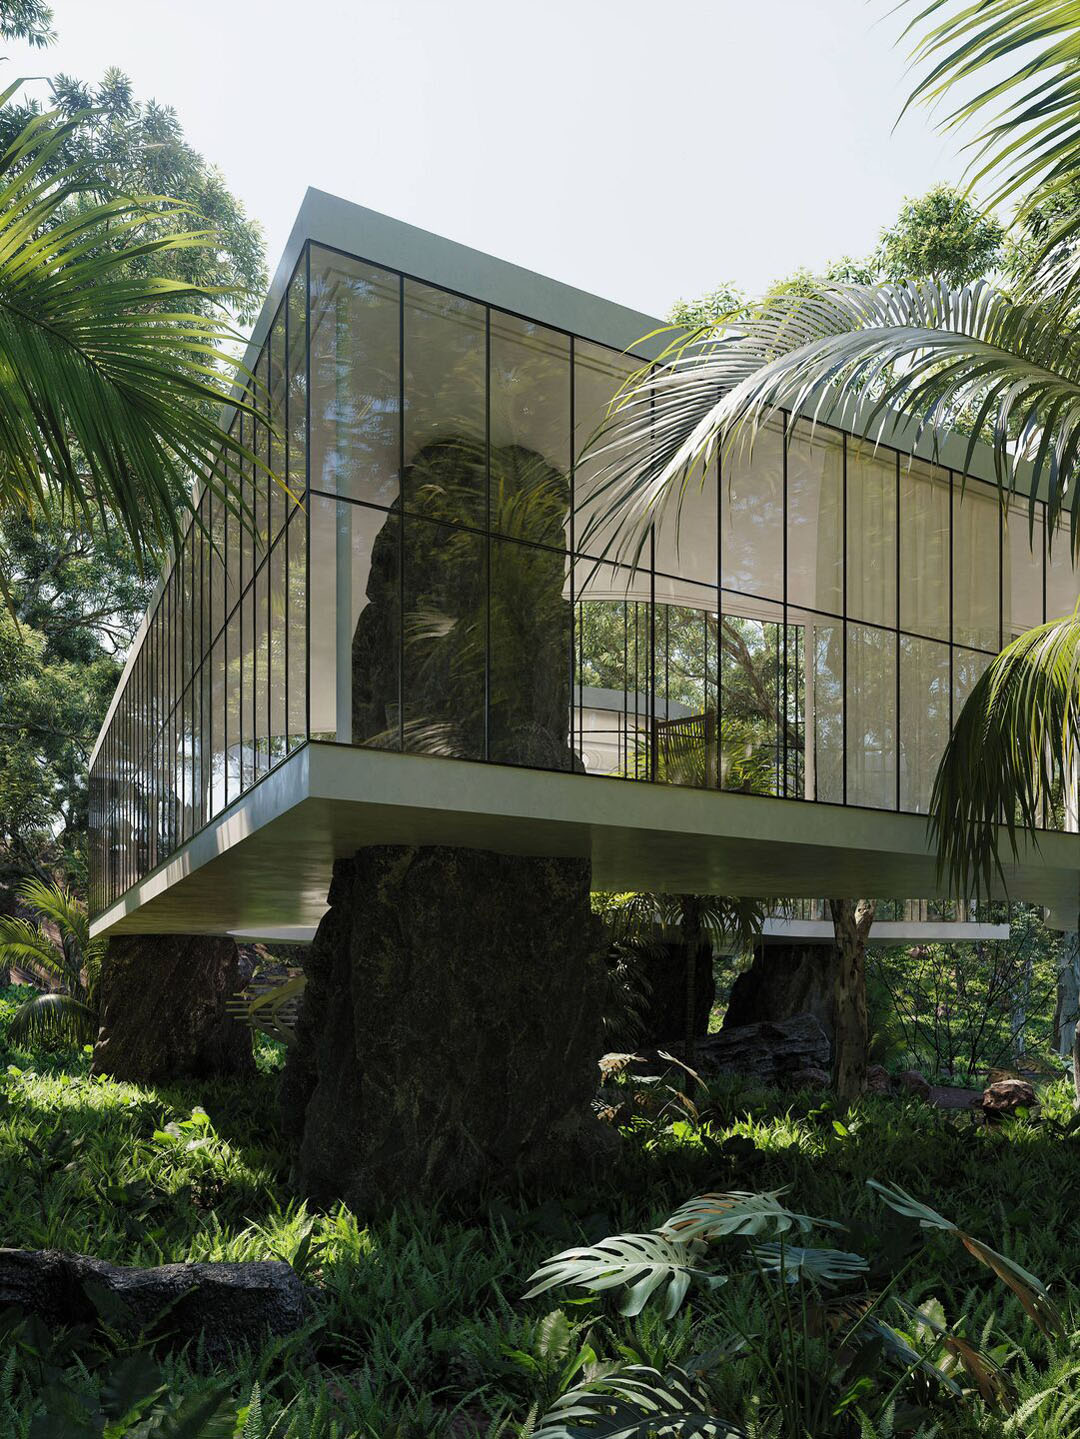 glass forest jungle casa atibaia modernist paulo escape charlotte taylor são modern interior idesignarch biophilic brutalist renders nicholas archello